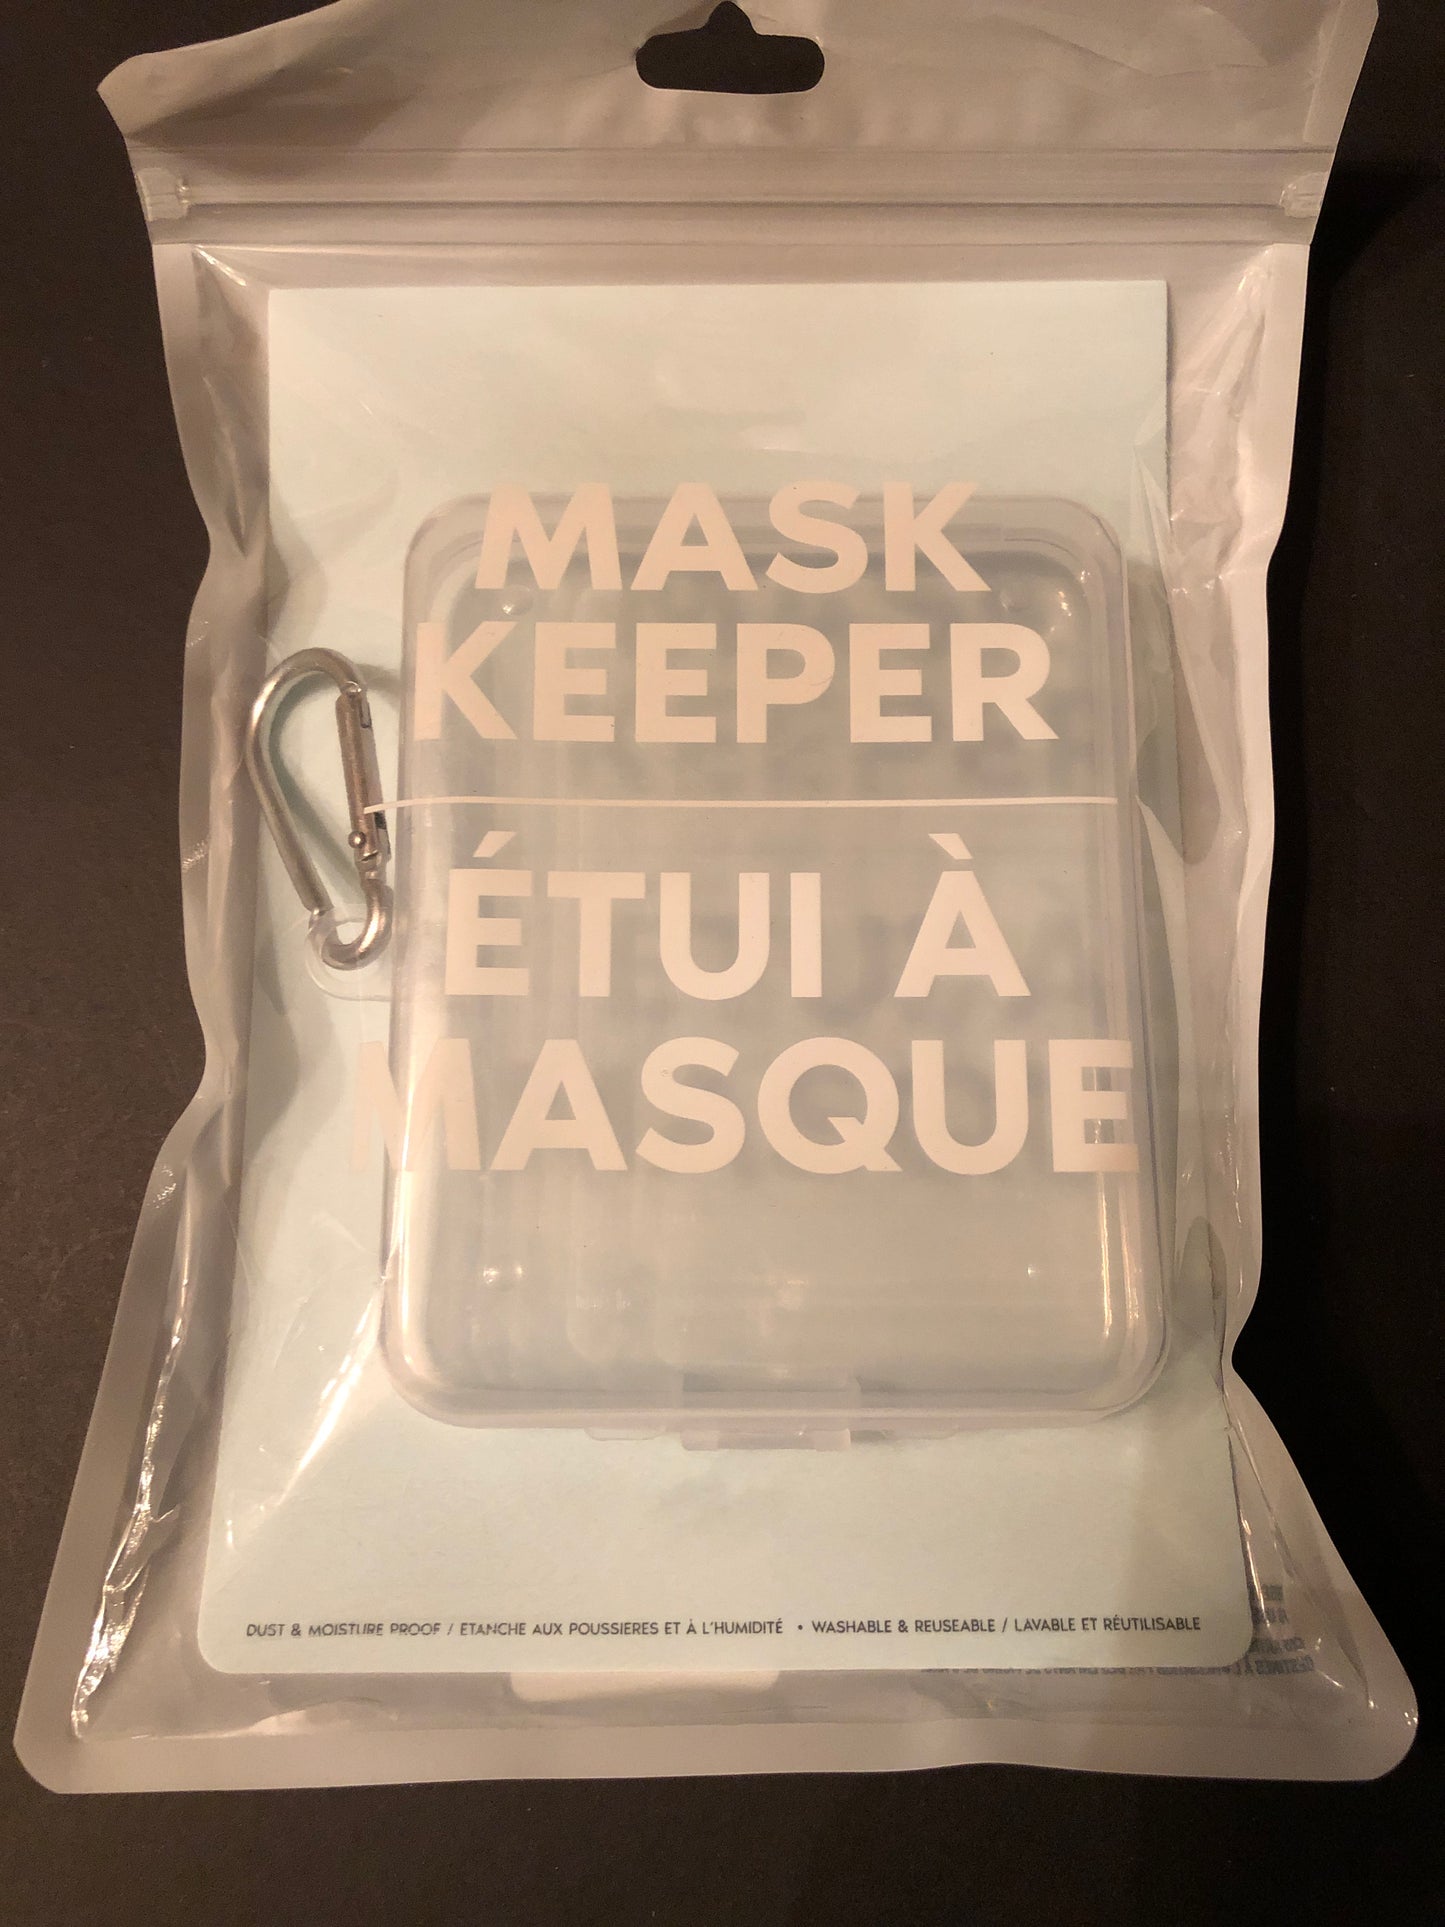 Mask keeper